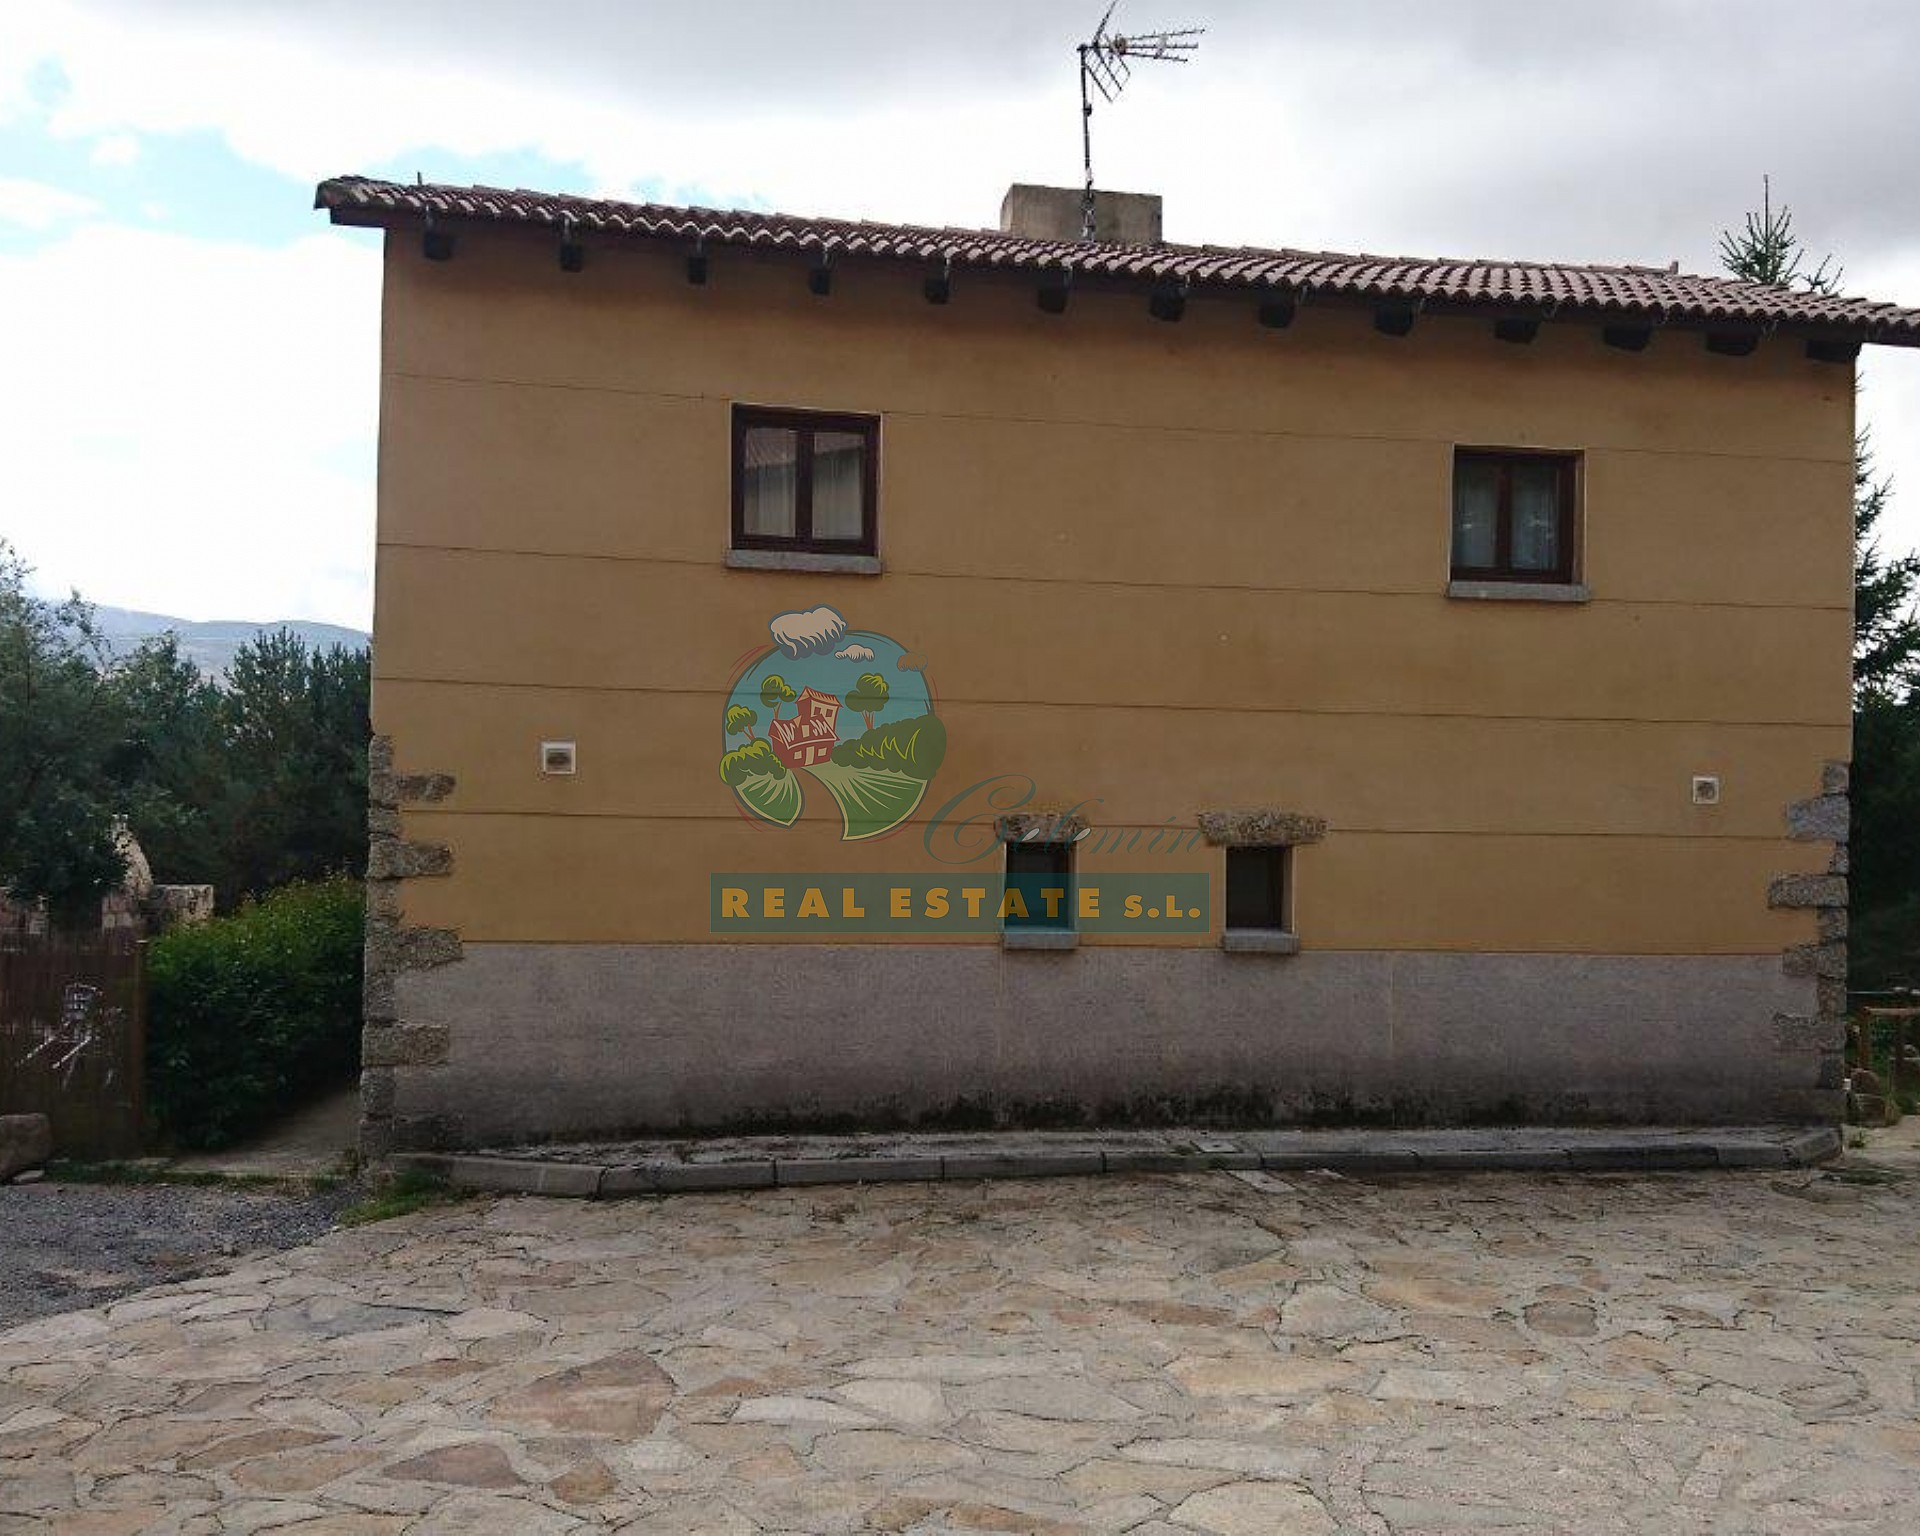 Village house in Sierra de Gredos.